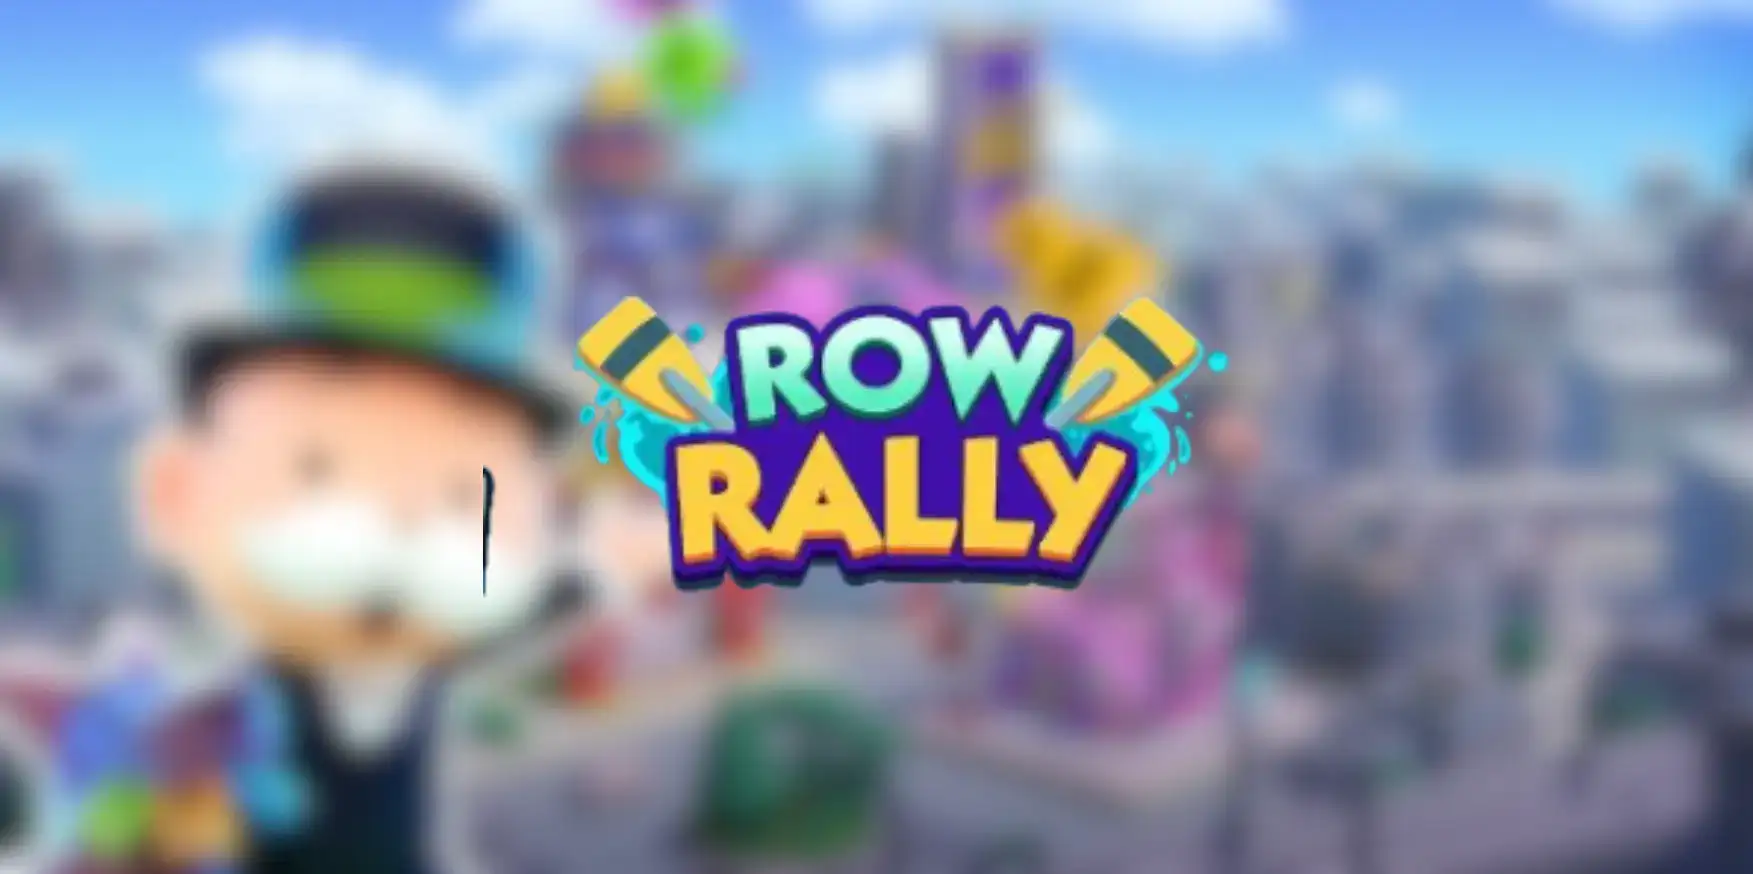 monopoly go row rally rewards and milestones